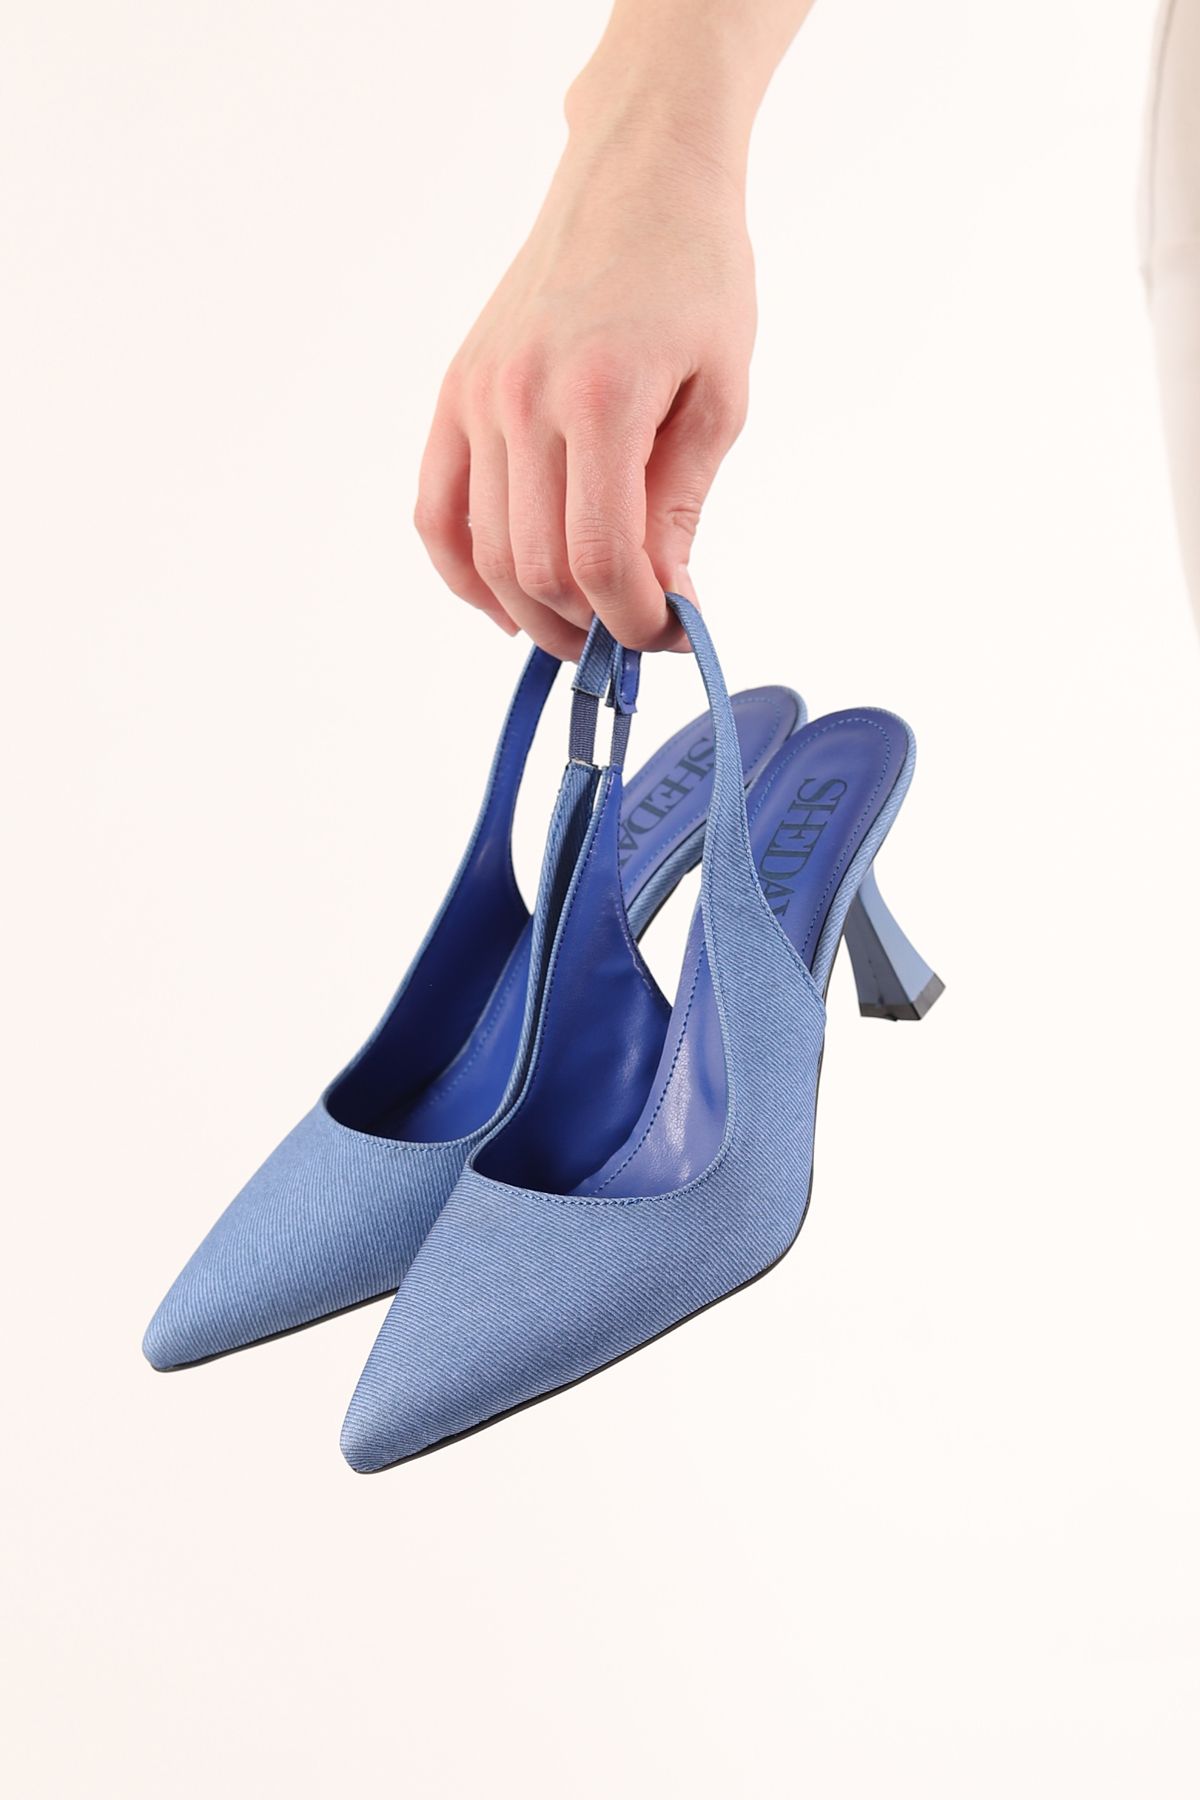 Shedax Kadın Stiletto Arkası Açık Tam Kalıp 7 Cm Topuklu Rugan Ayakkabı